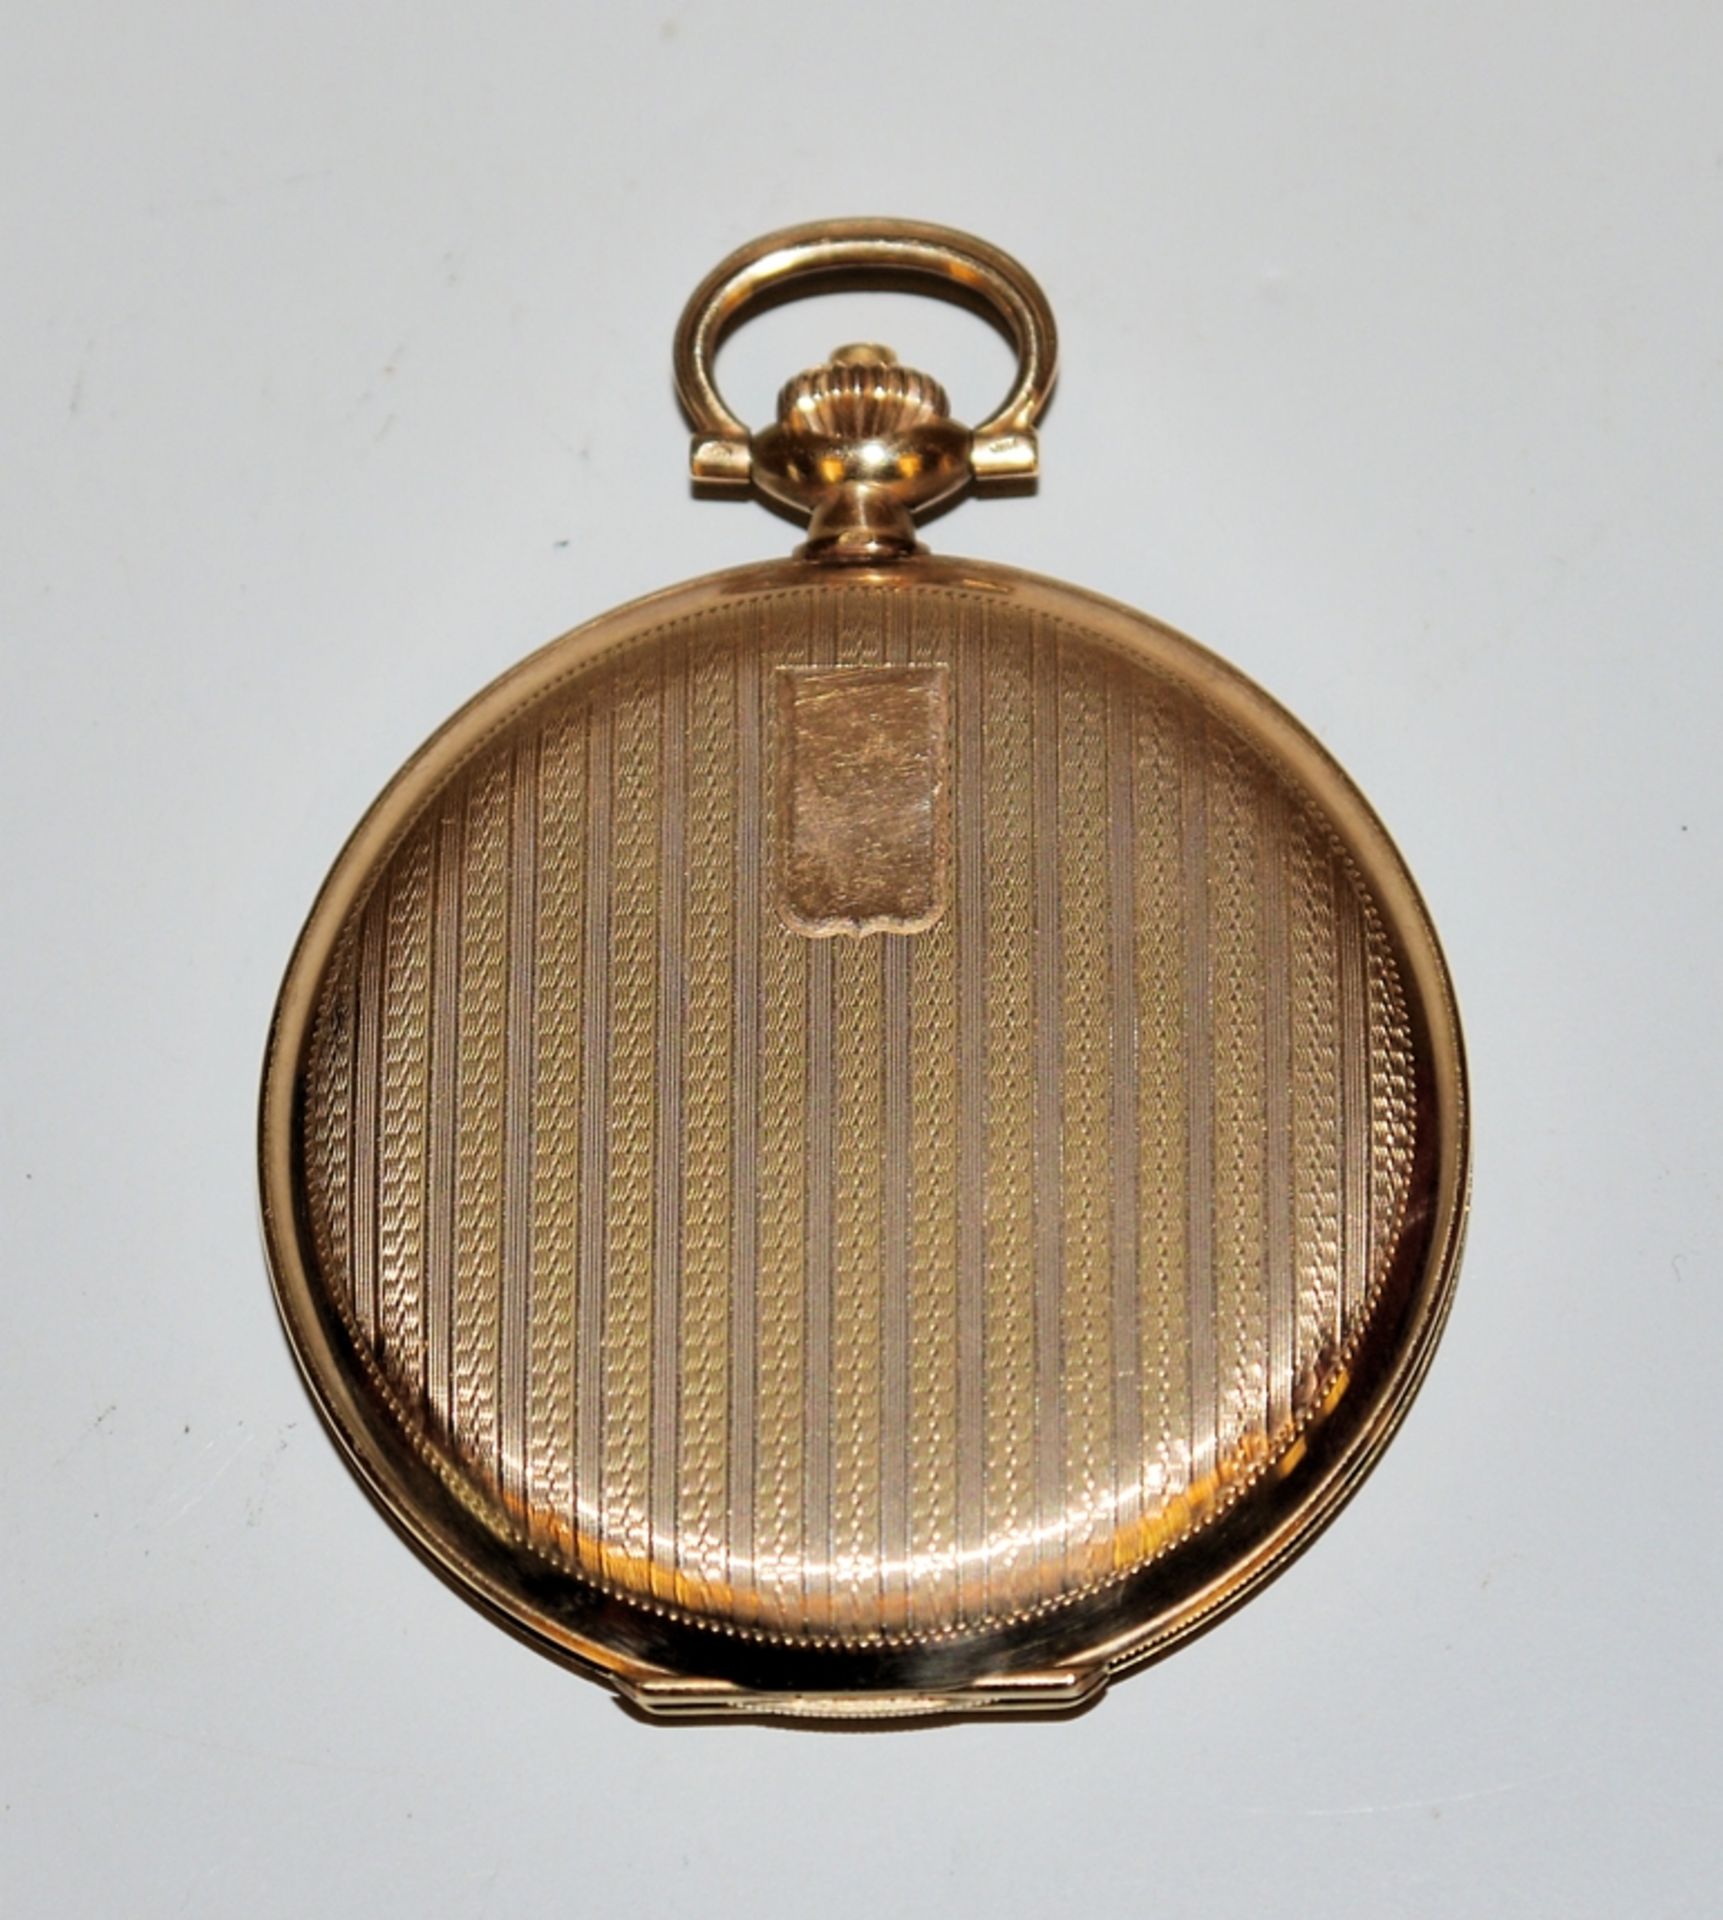 IWC Savonette gold gentleman's pocket watch, Switzerland circa 1925/30, - Image 3 of 3